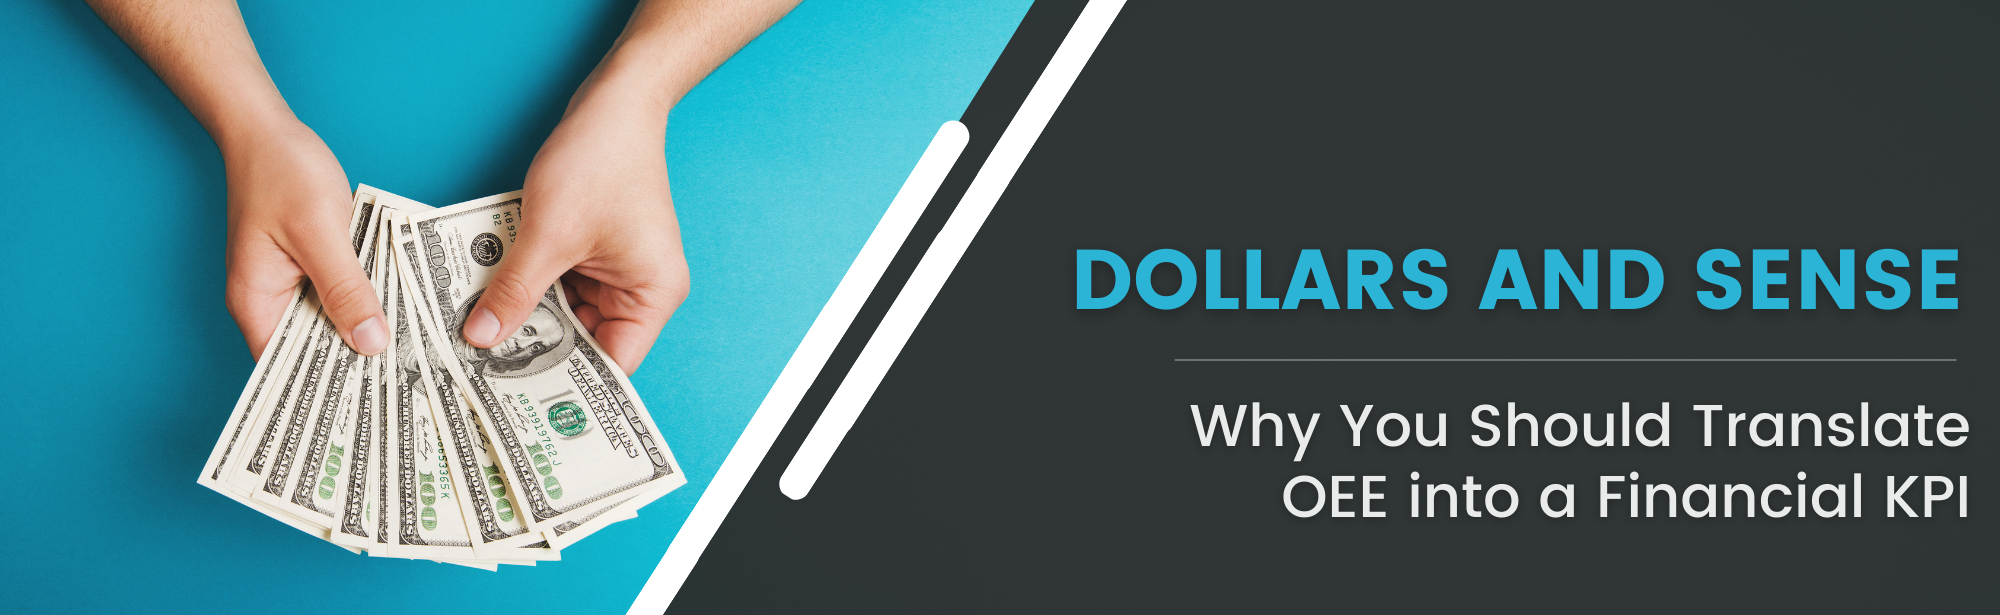 Dollars and sense - Blog Header